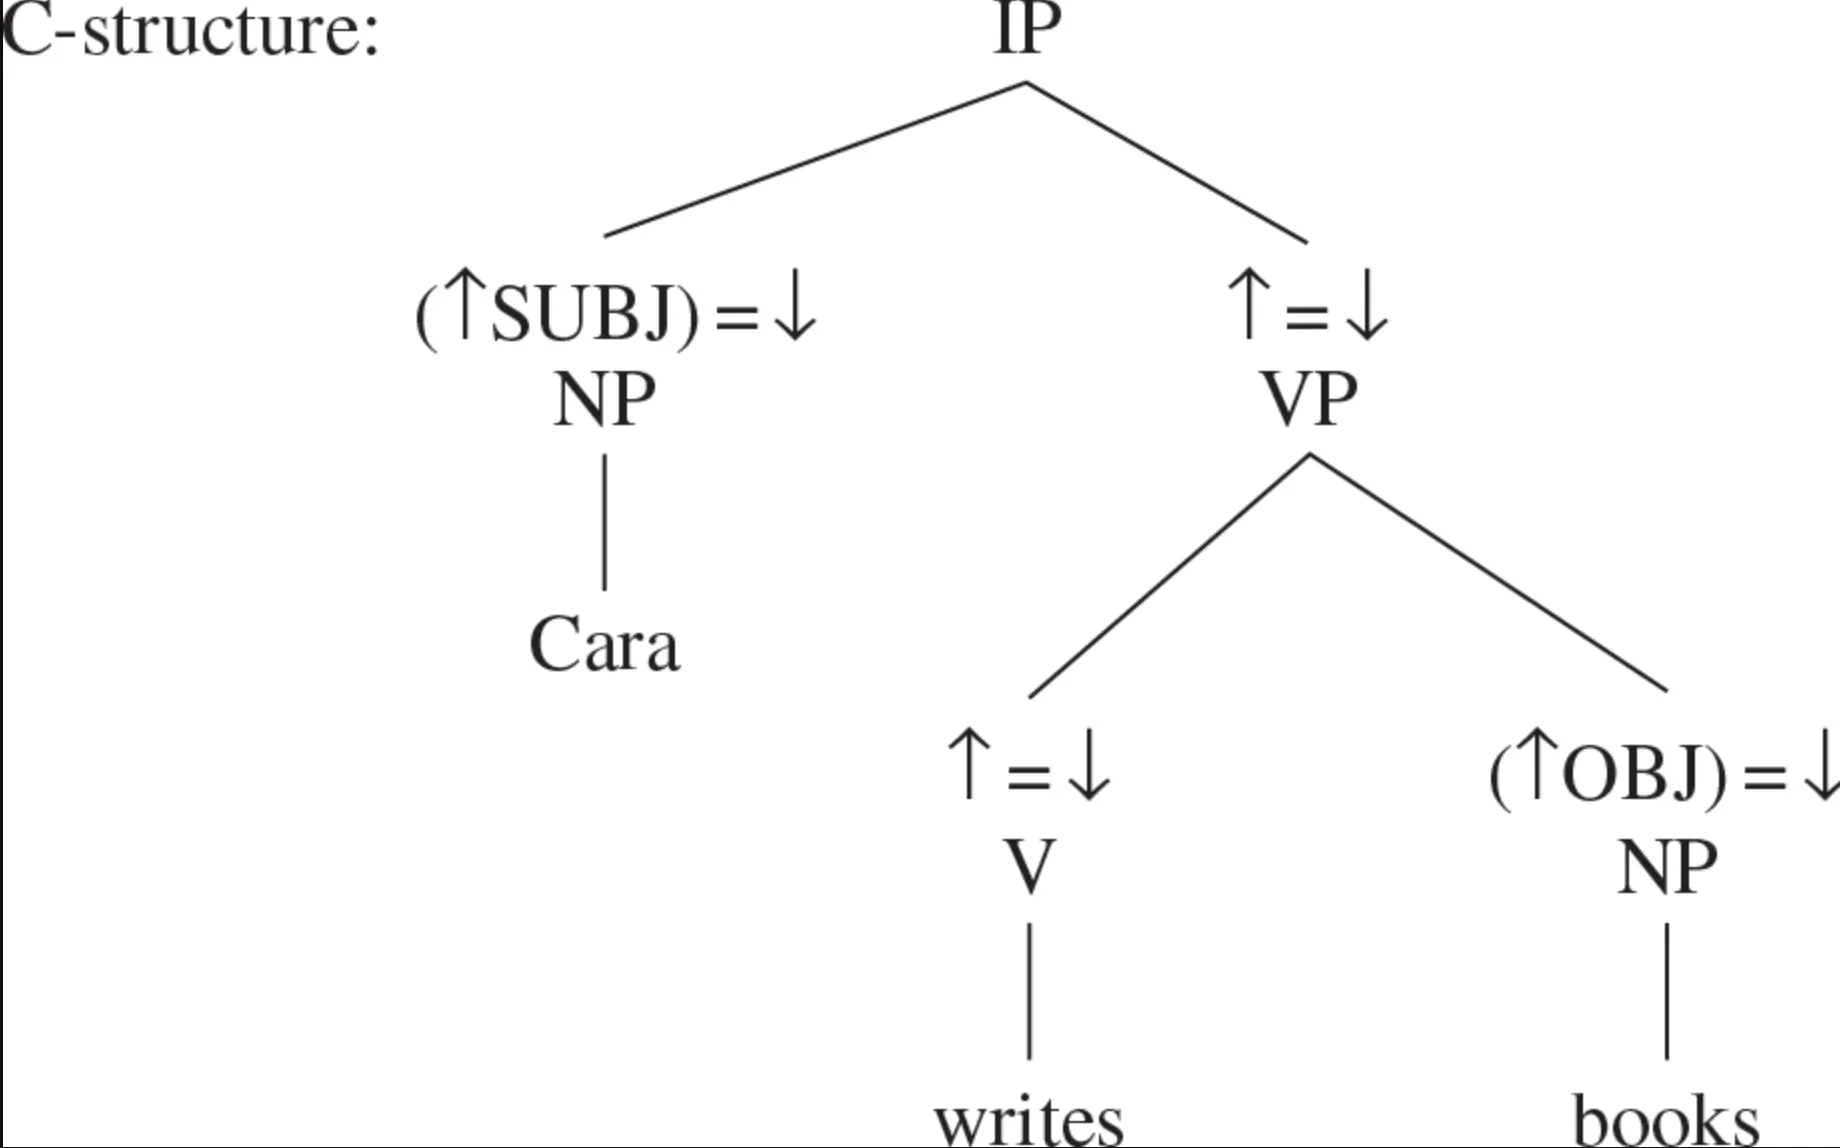 C-structure (Constituent Structure)